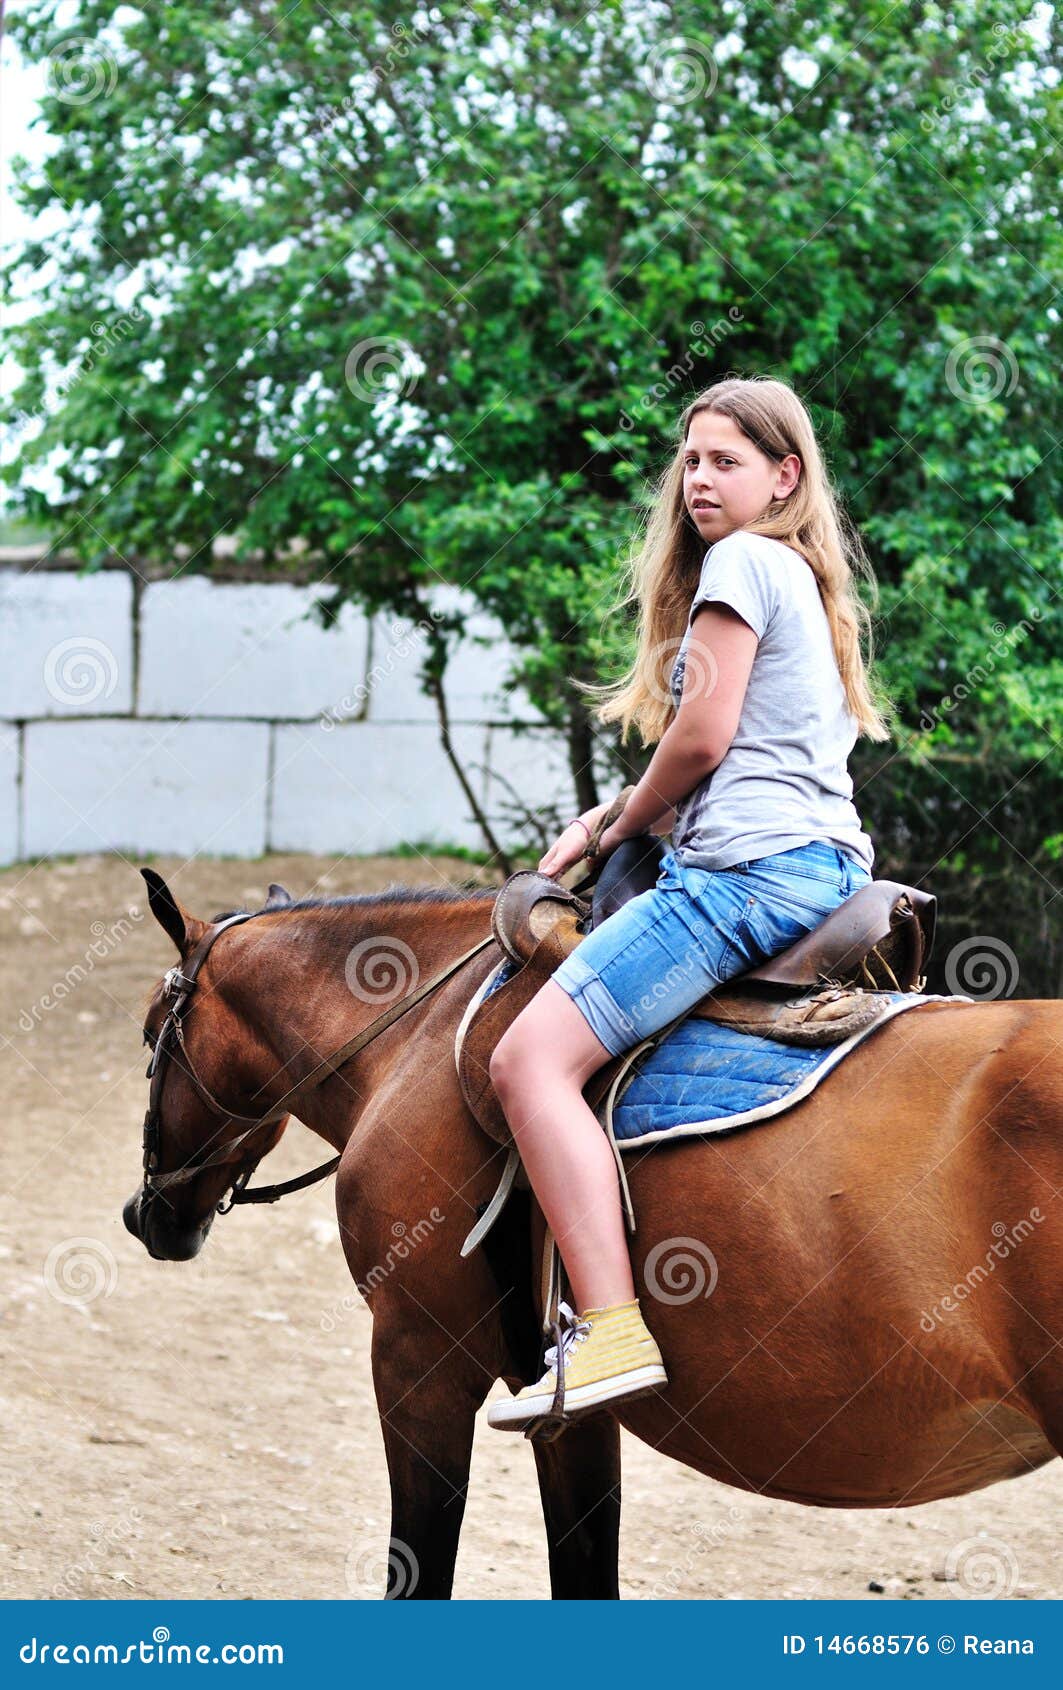 Teen girl riding horse stock photo